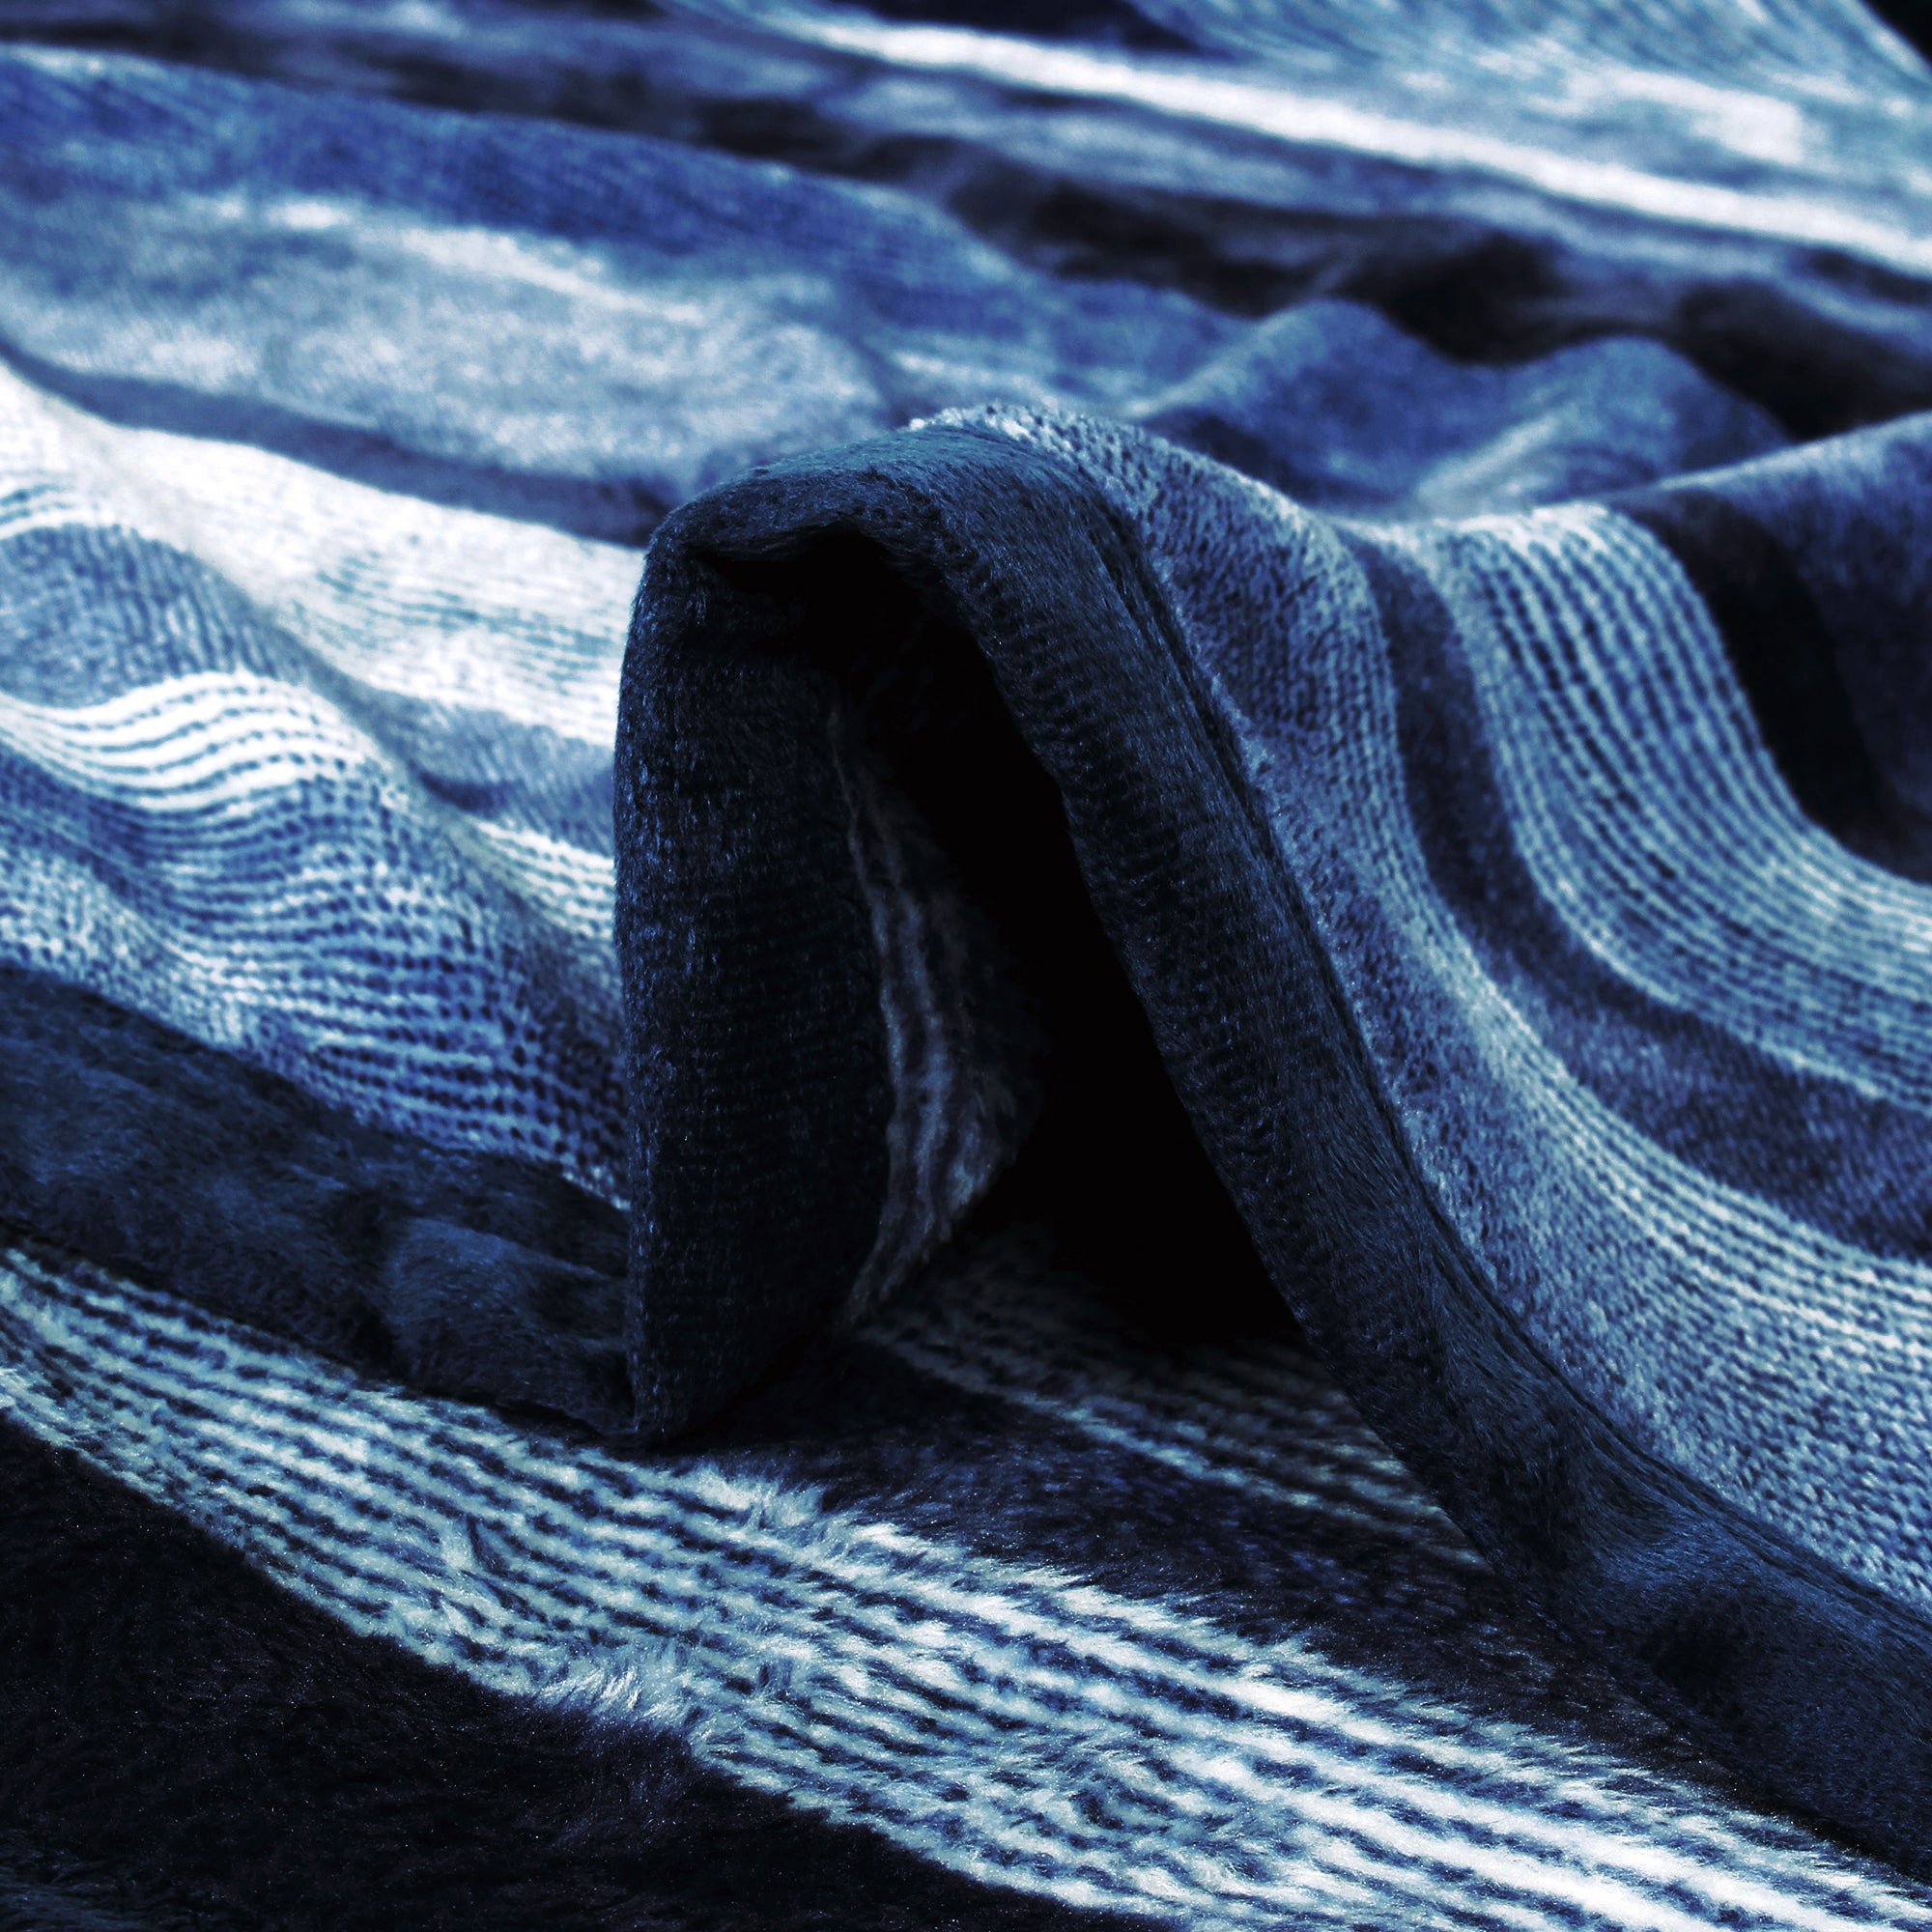 Premium Dark Blue Single Flannel Blanket